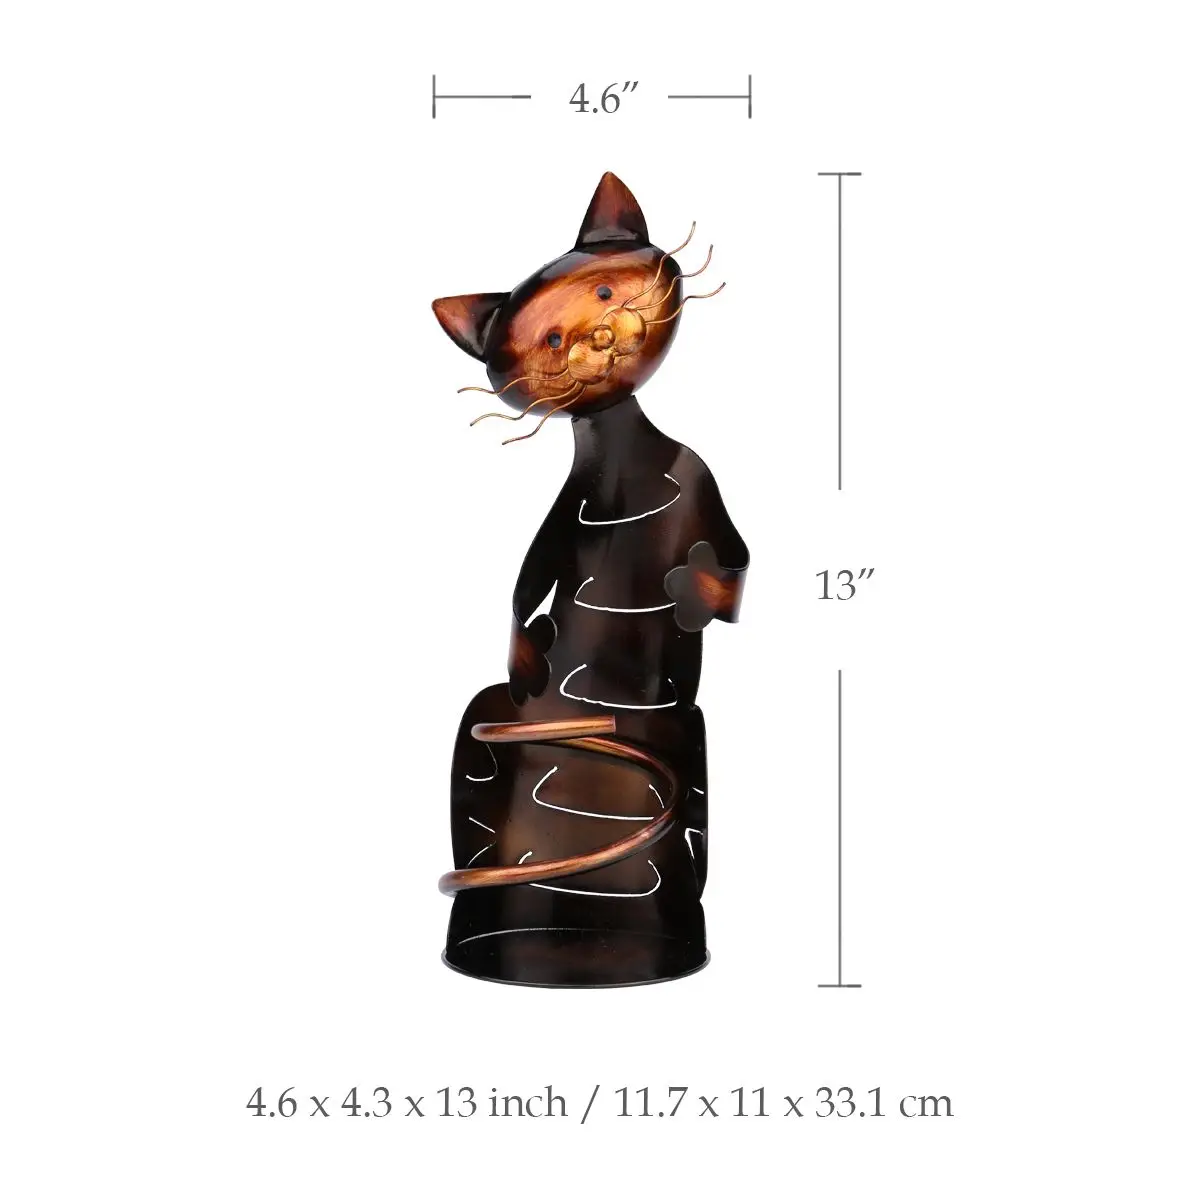 Tooarts железная скульптура в форме кота держатель для бутылки вина полка металлическая скульптура практичная скульптура домашние поделки для декорирования интерьера